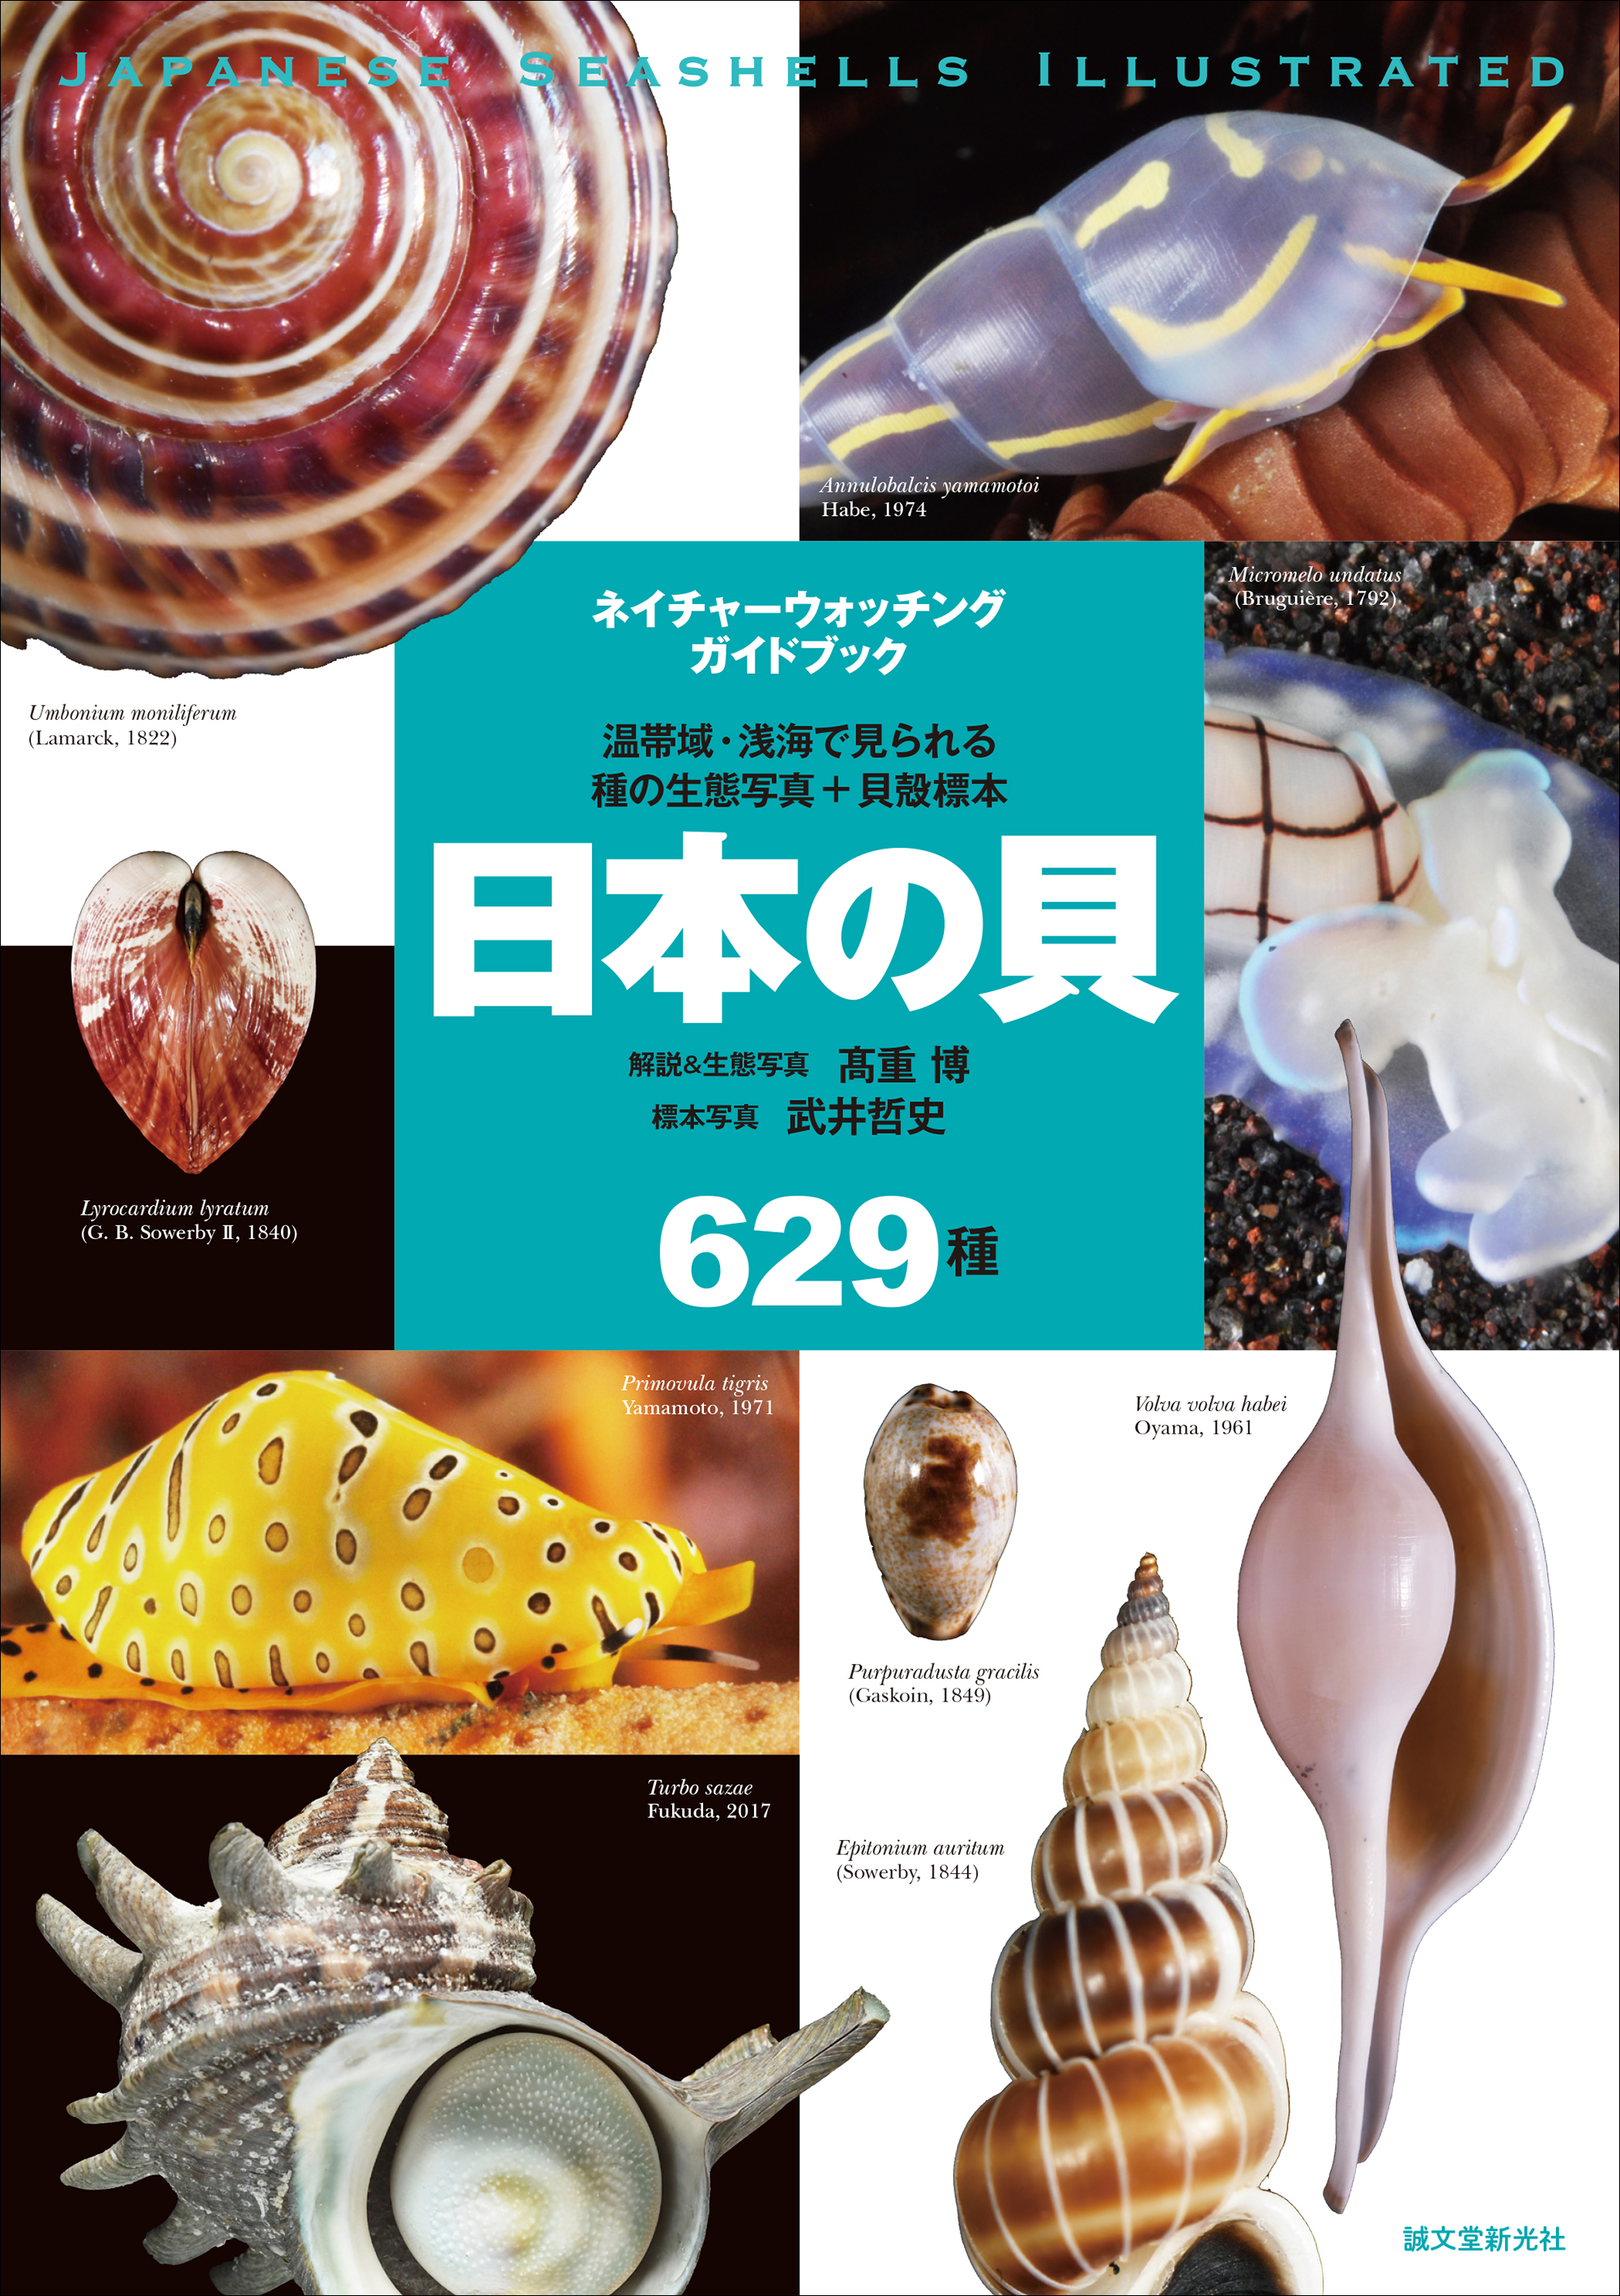 日本の貝の生態写真と標本写真を629種 全て掲載した画期的な図鑑 普段見られない目 触覚等の写真は種類同定にも役立ちます 株式会社誠文堂新光社のプレスリリース